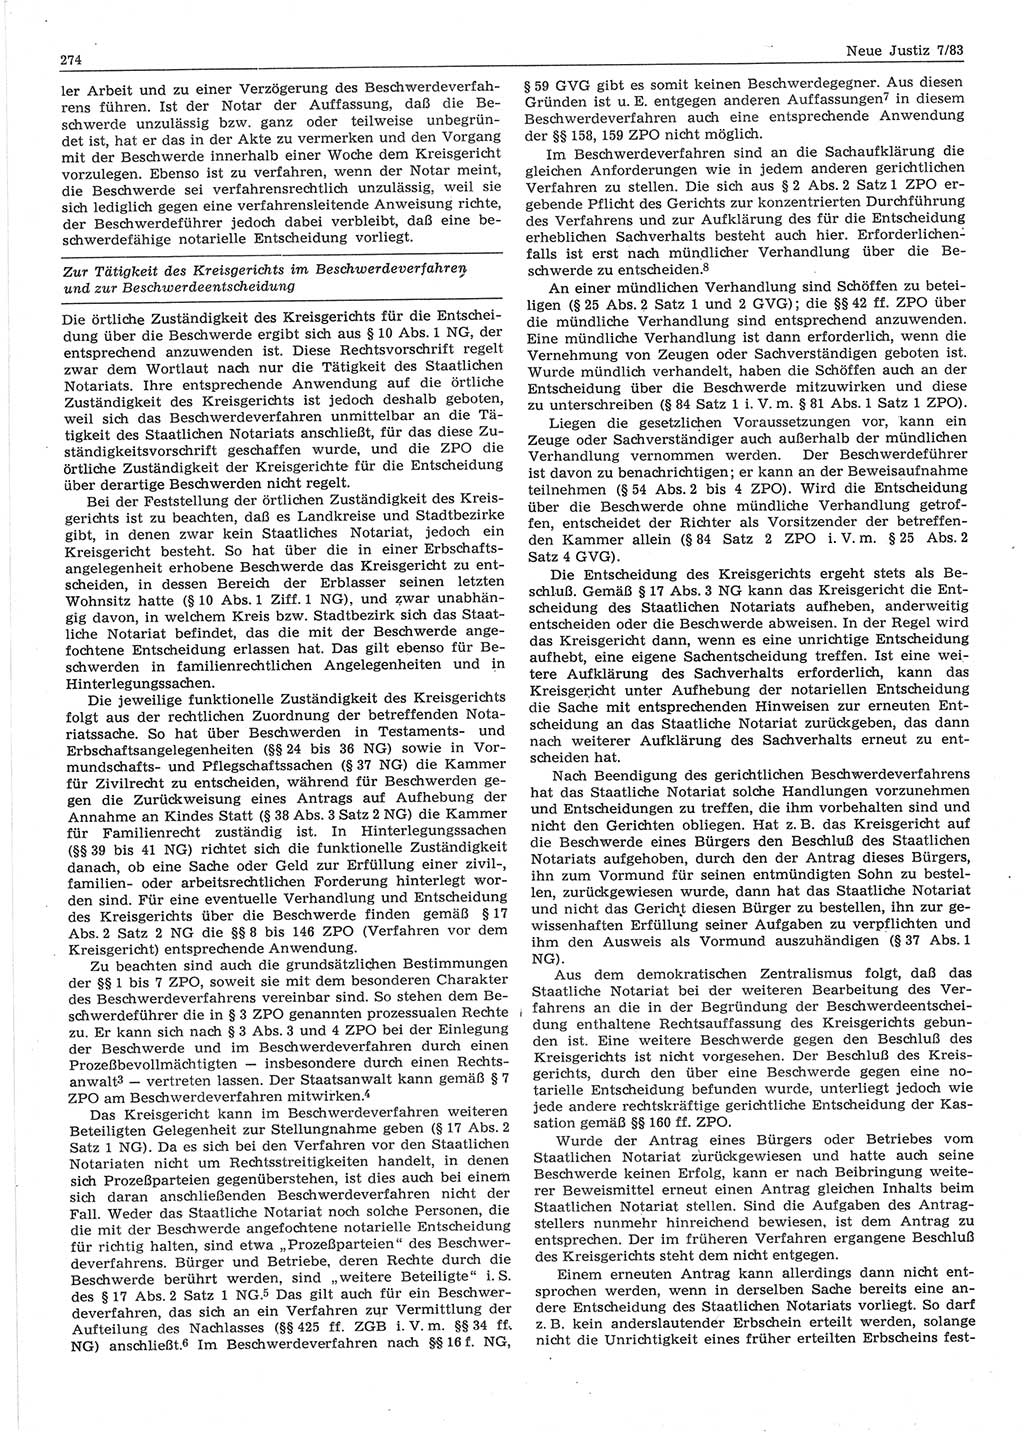 Neue Justiz (NJ), Zeitschrift für sozialistisches Recht und Gesetzlichkeit [Deutsche Demokratische Republik (DDR)], 37. Jahrgang 1983, Seite 274 (NJ DDR 1983, S. 274)